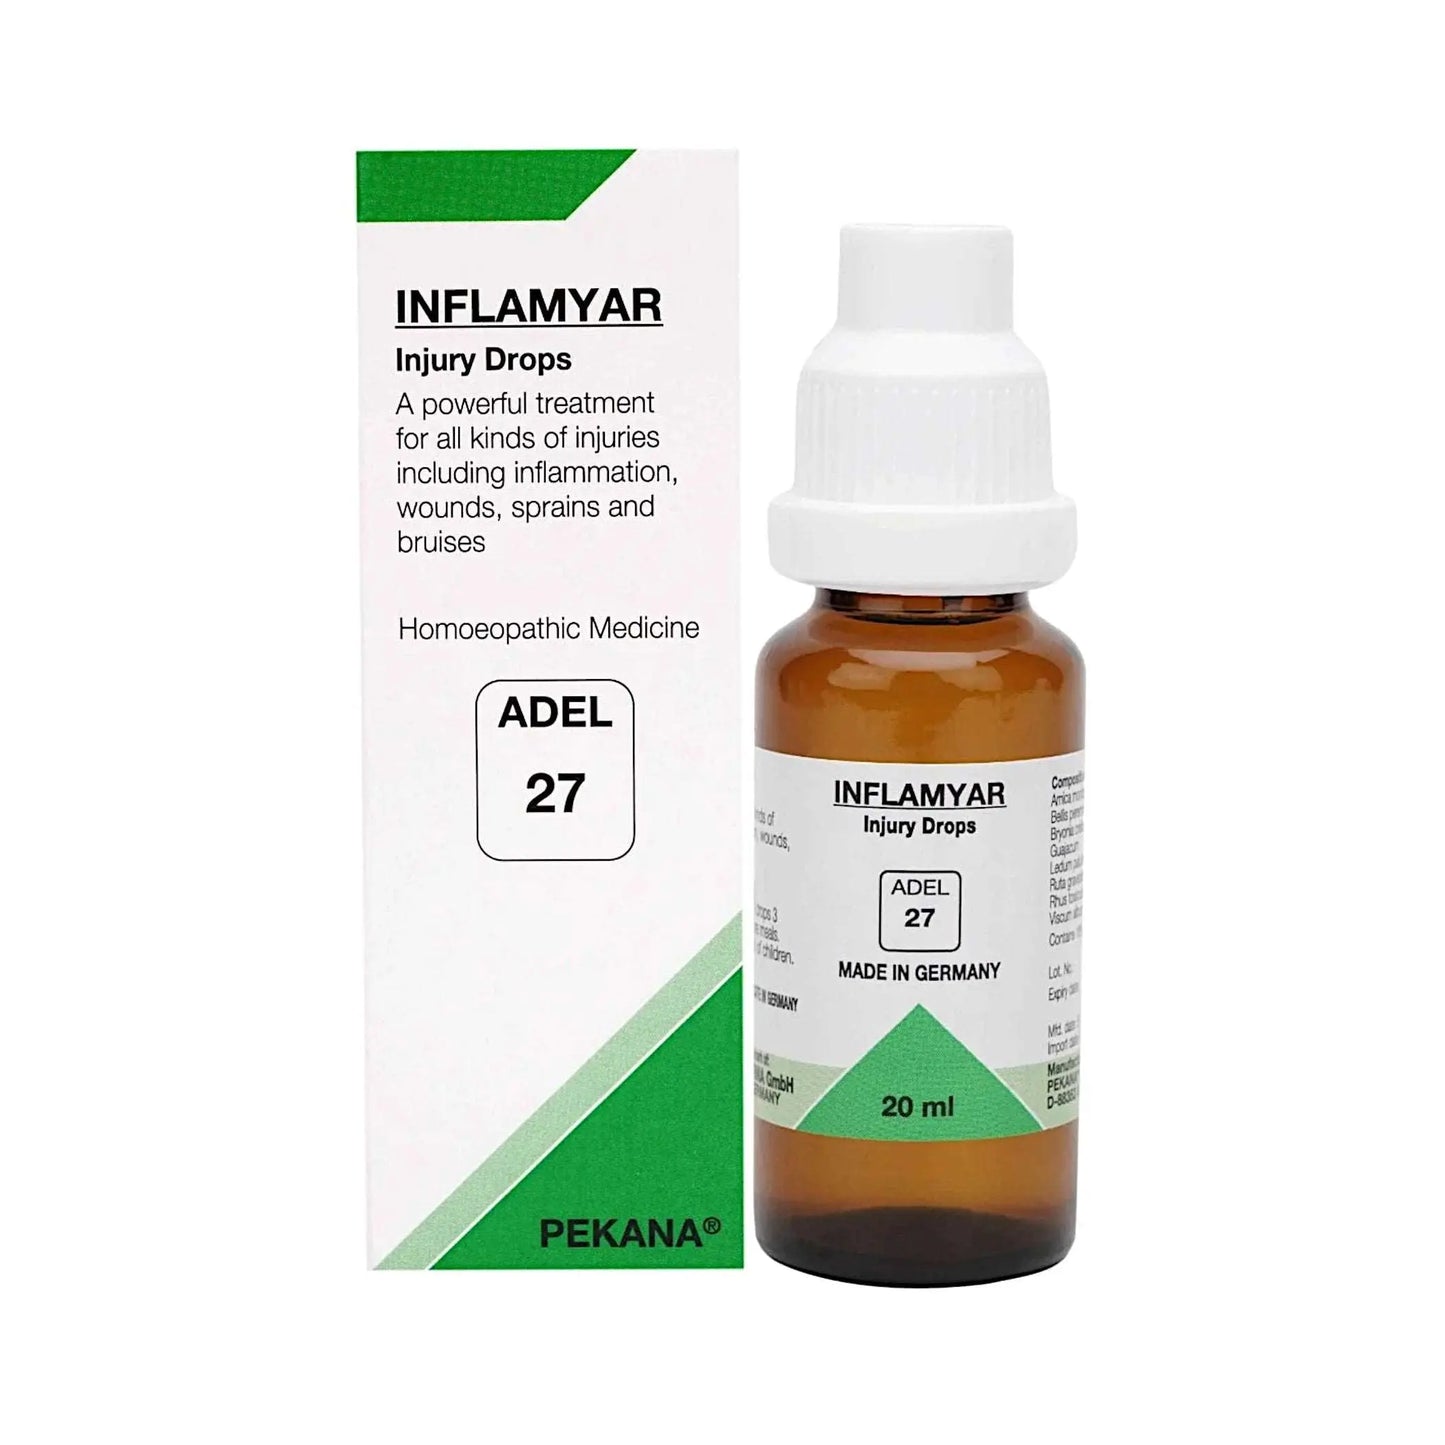 ADEL Germany Homeopathy - ADEL27 Inflamyar Injury Drops 20 ml - my-ayurvedic